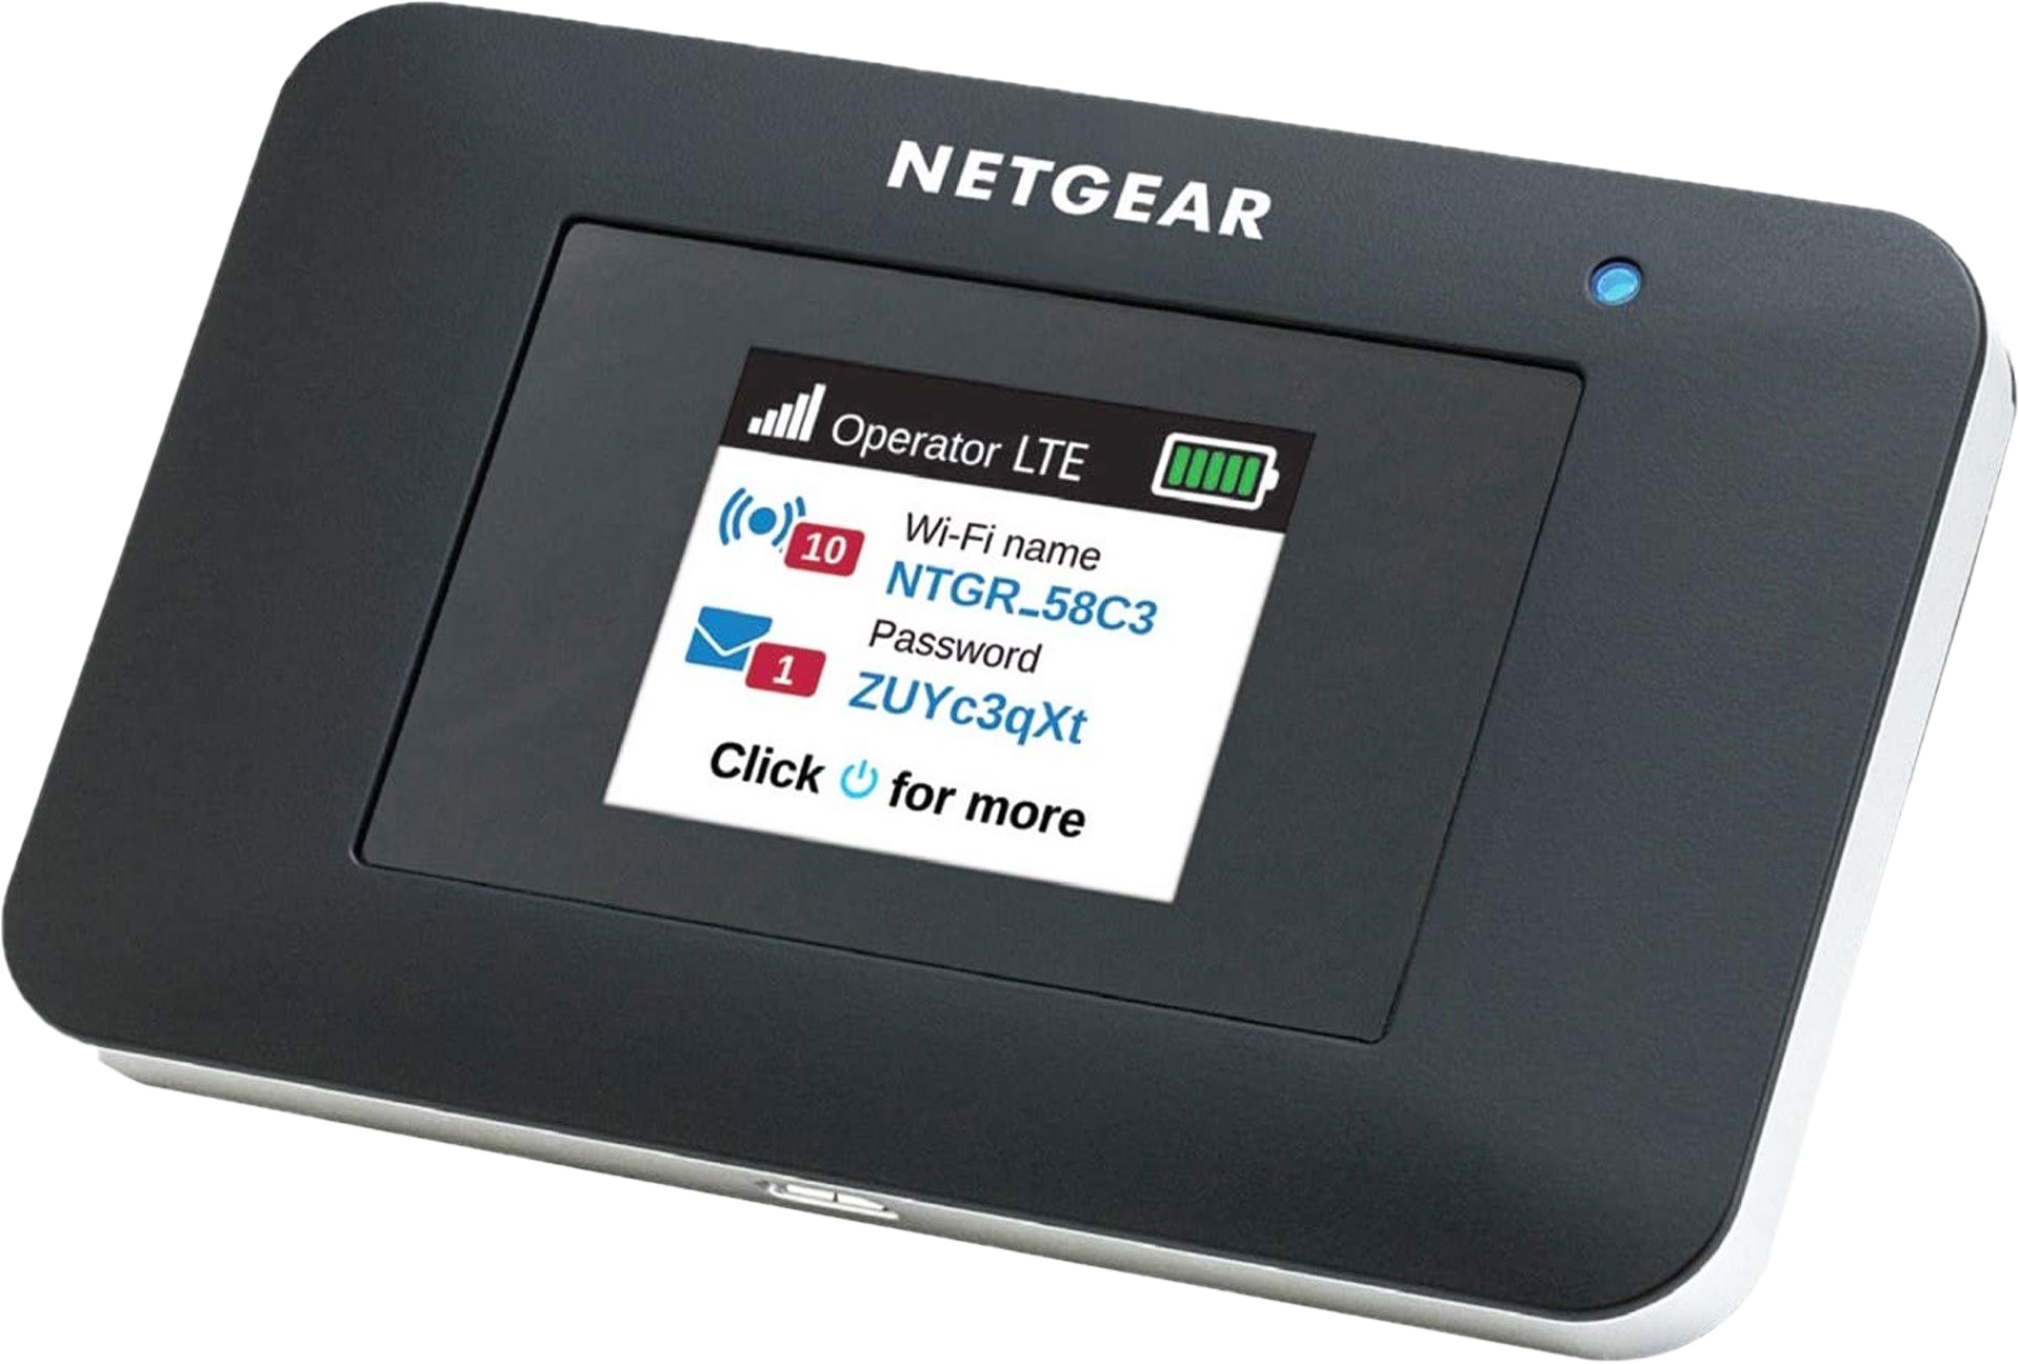 Netgear Explorer2 WiFi Hotspot router